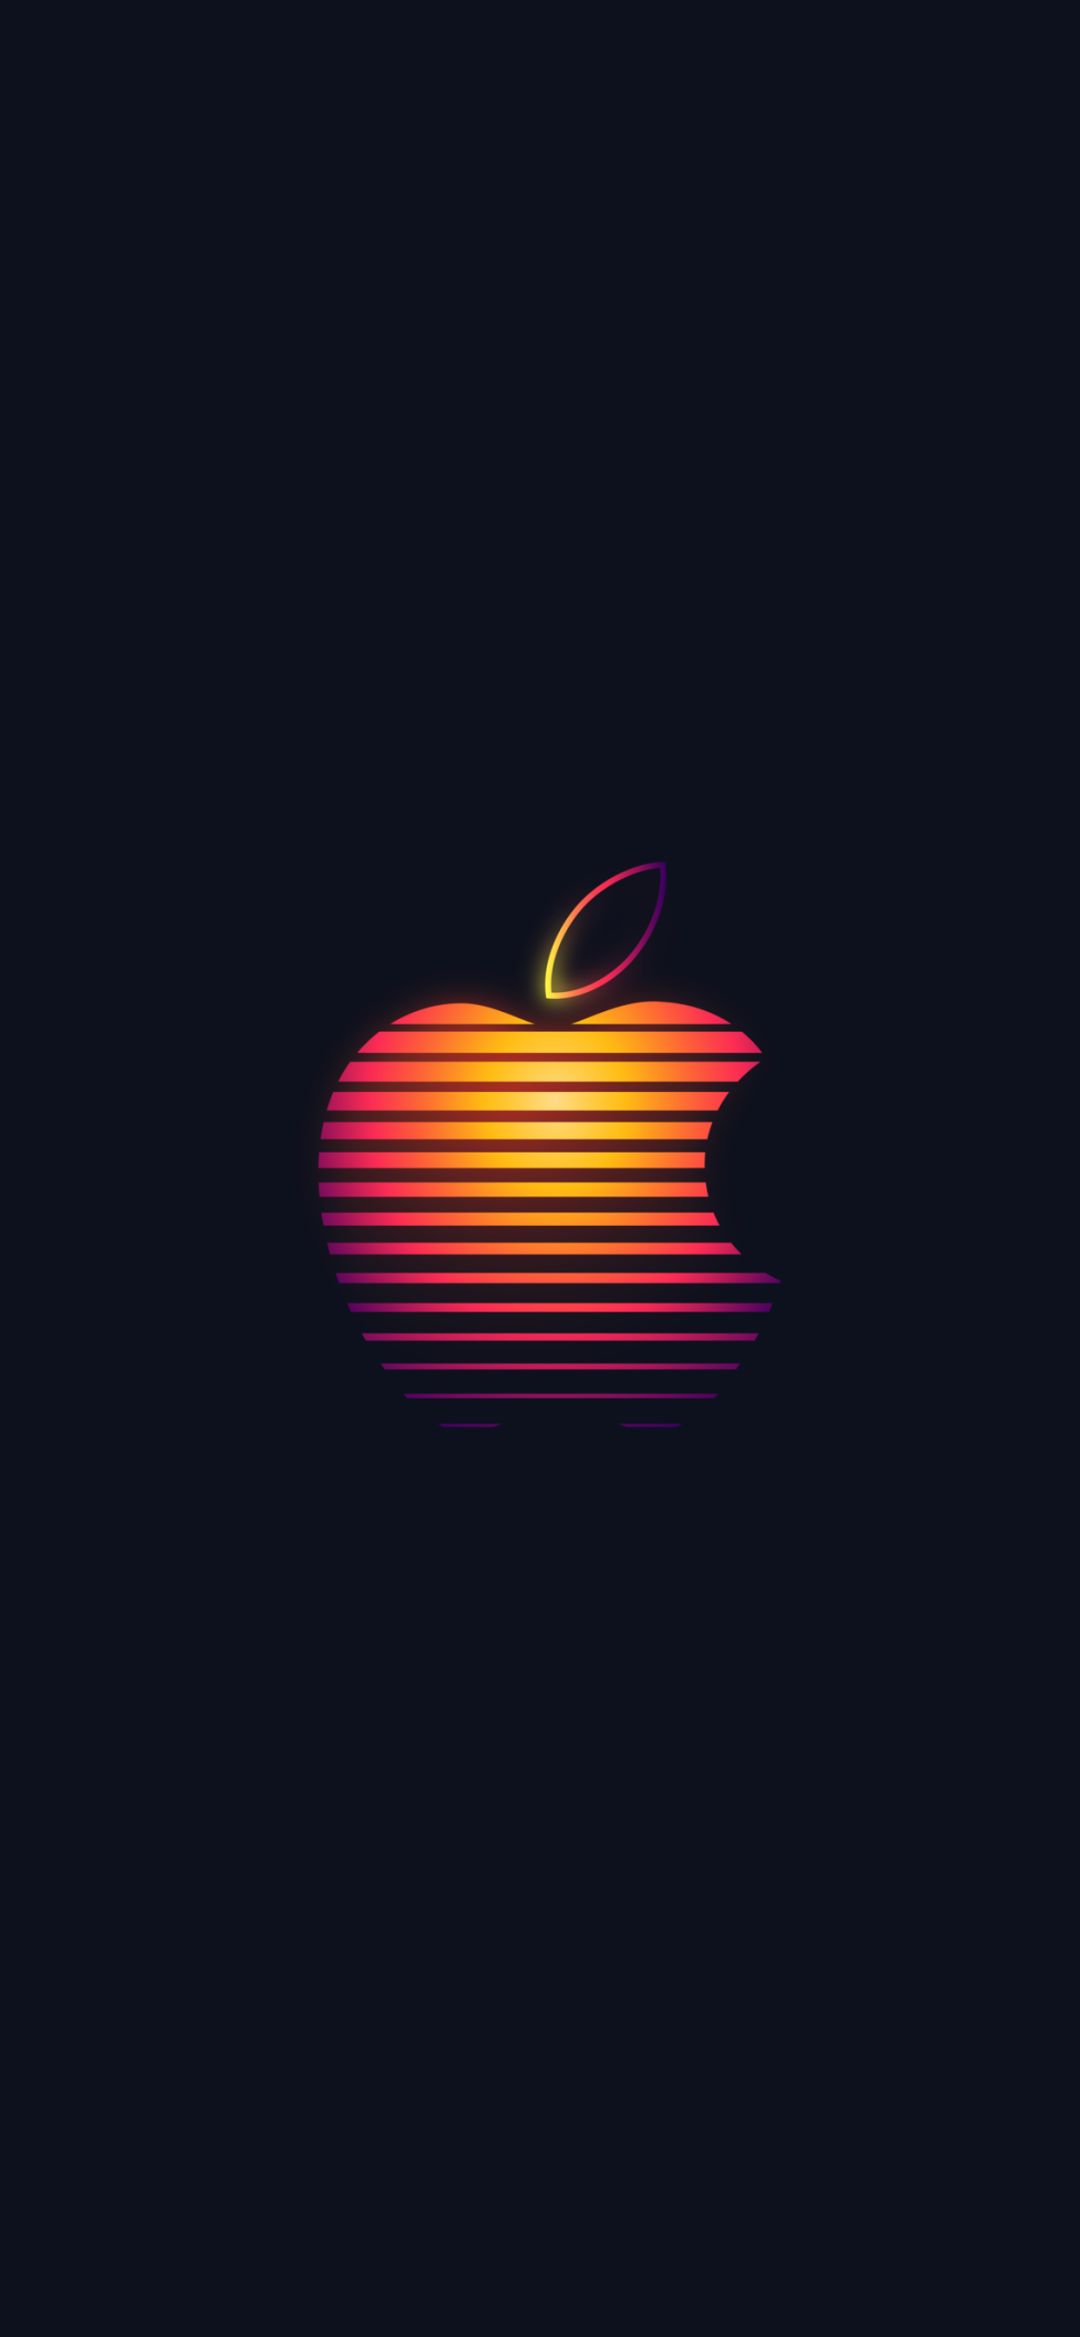 苹果手机壁纸高清logo图片